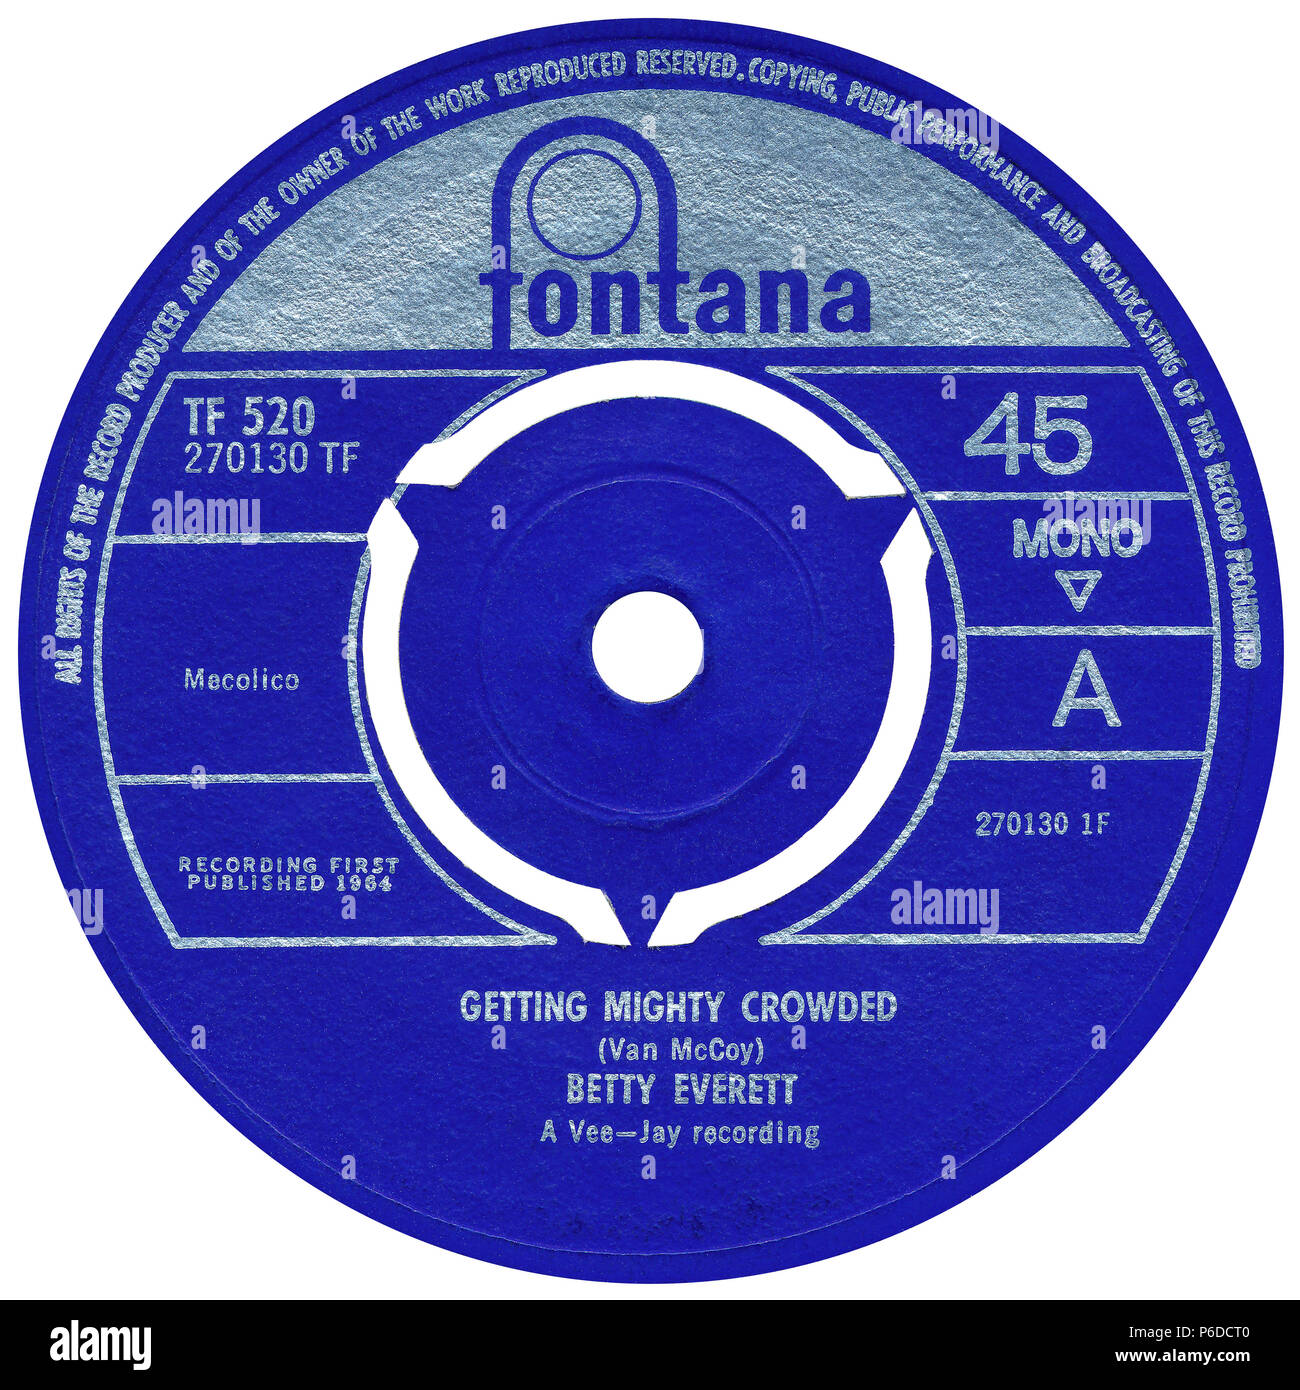 U.K. 45 rpm 7' singolo di Getting Mighty affollati da Betty Everett sulla Fontana etichetta dal 1964. Scritto da Van McCoy. Foto Stock